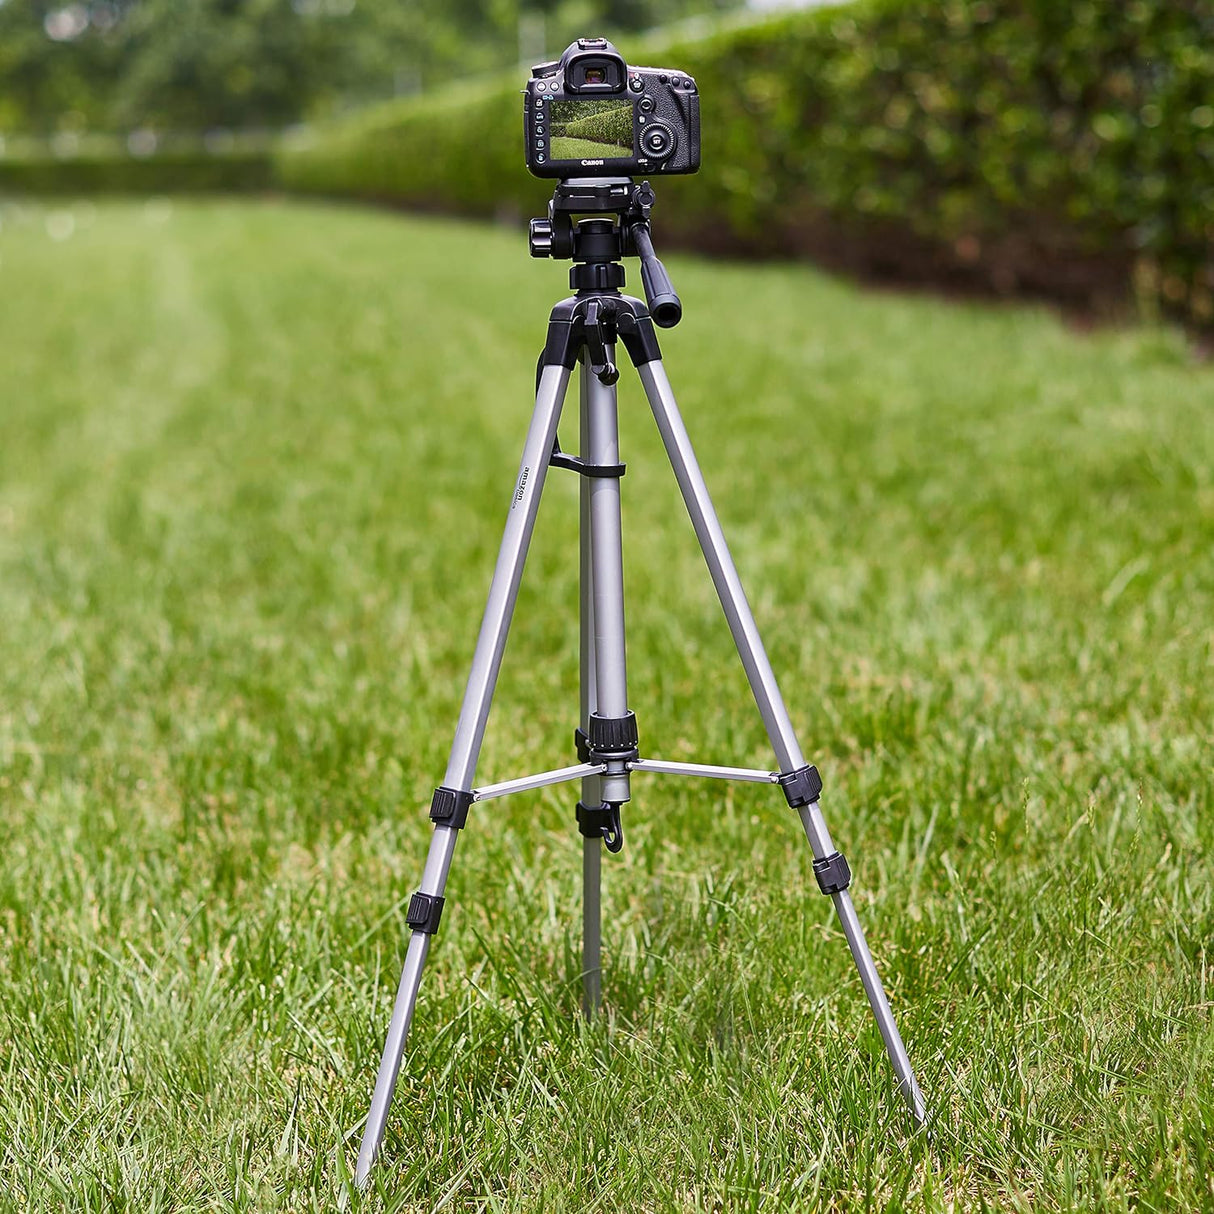 Custodia per fotocamera reflex analogica e digitale, nera 19,8 x 18,4 x 24.